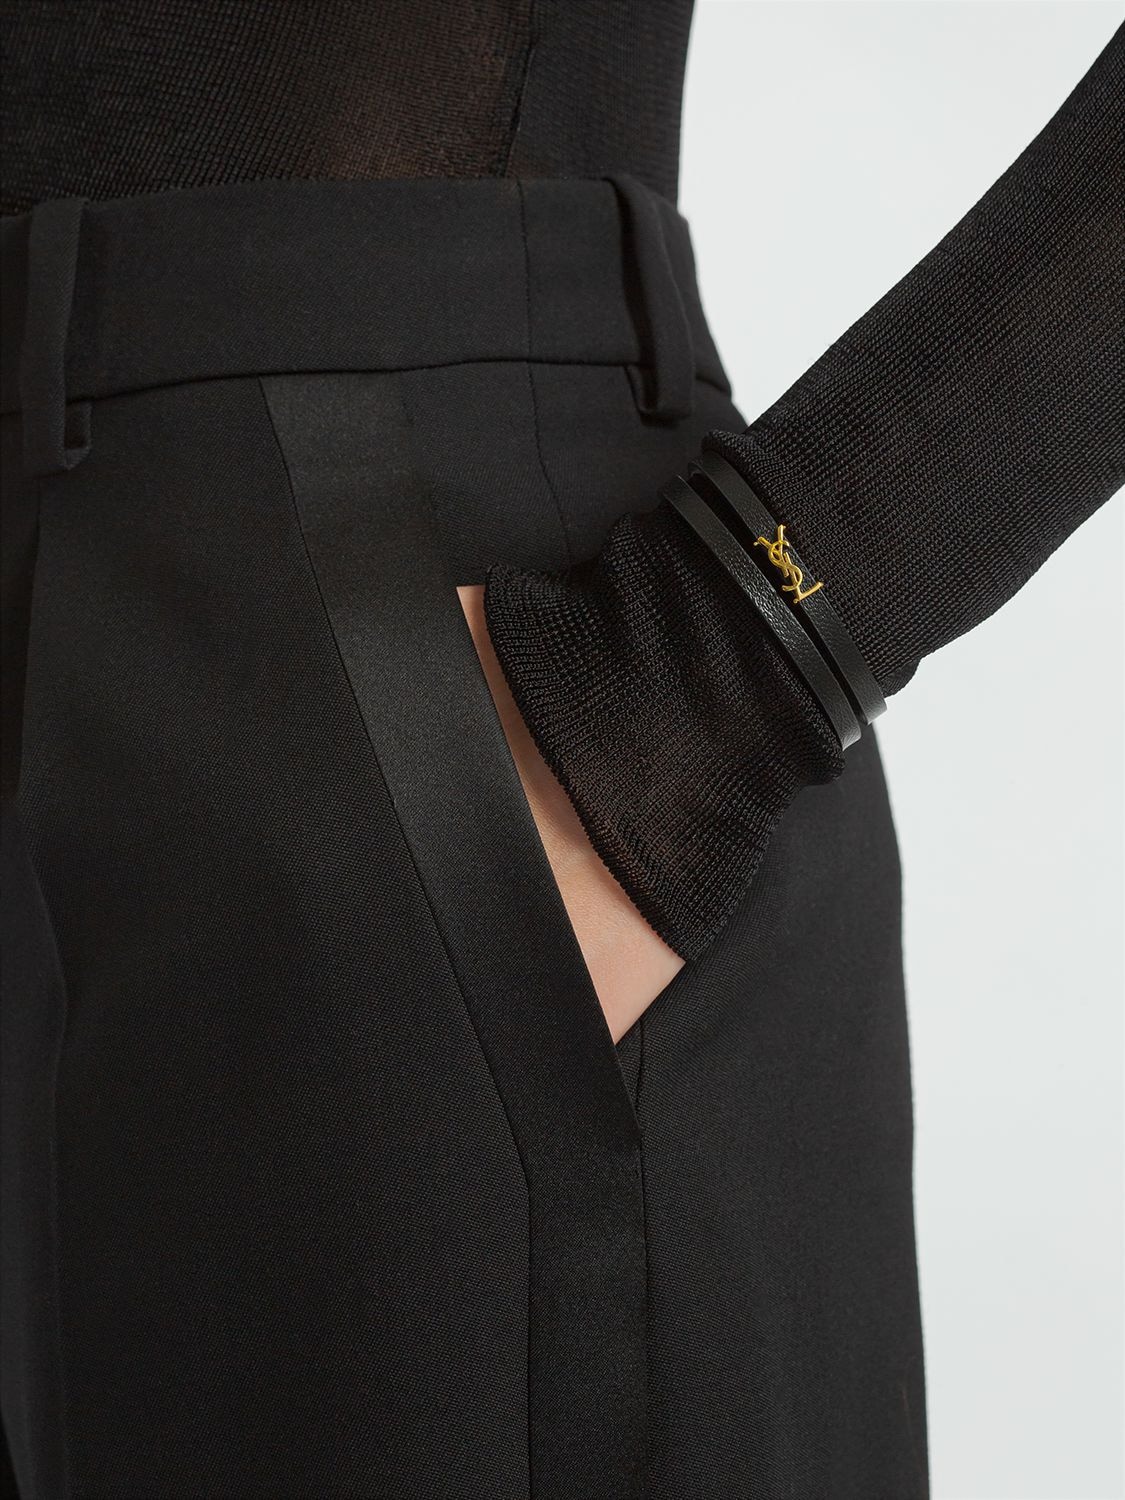 Saint Laurent Monogram Black Leather Bracelet – Queen Bee of